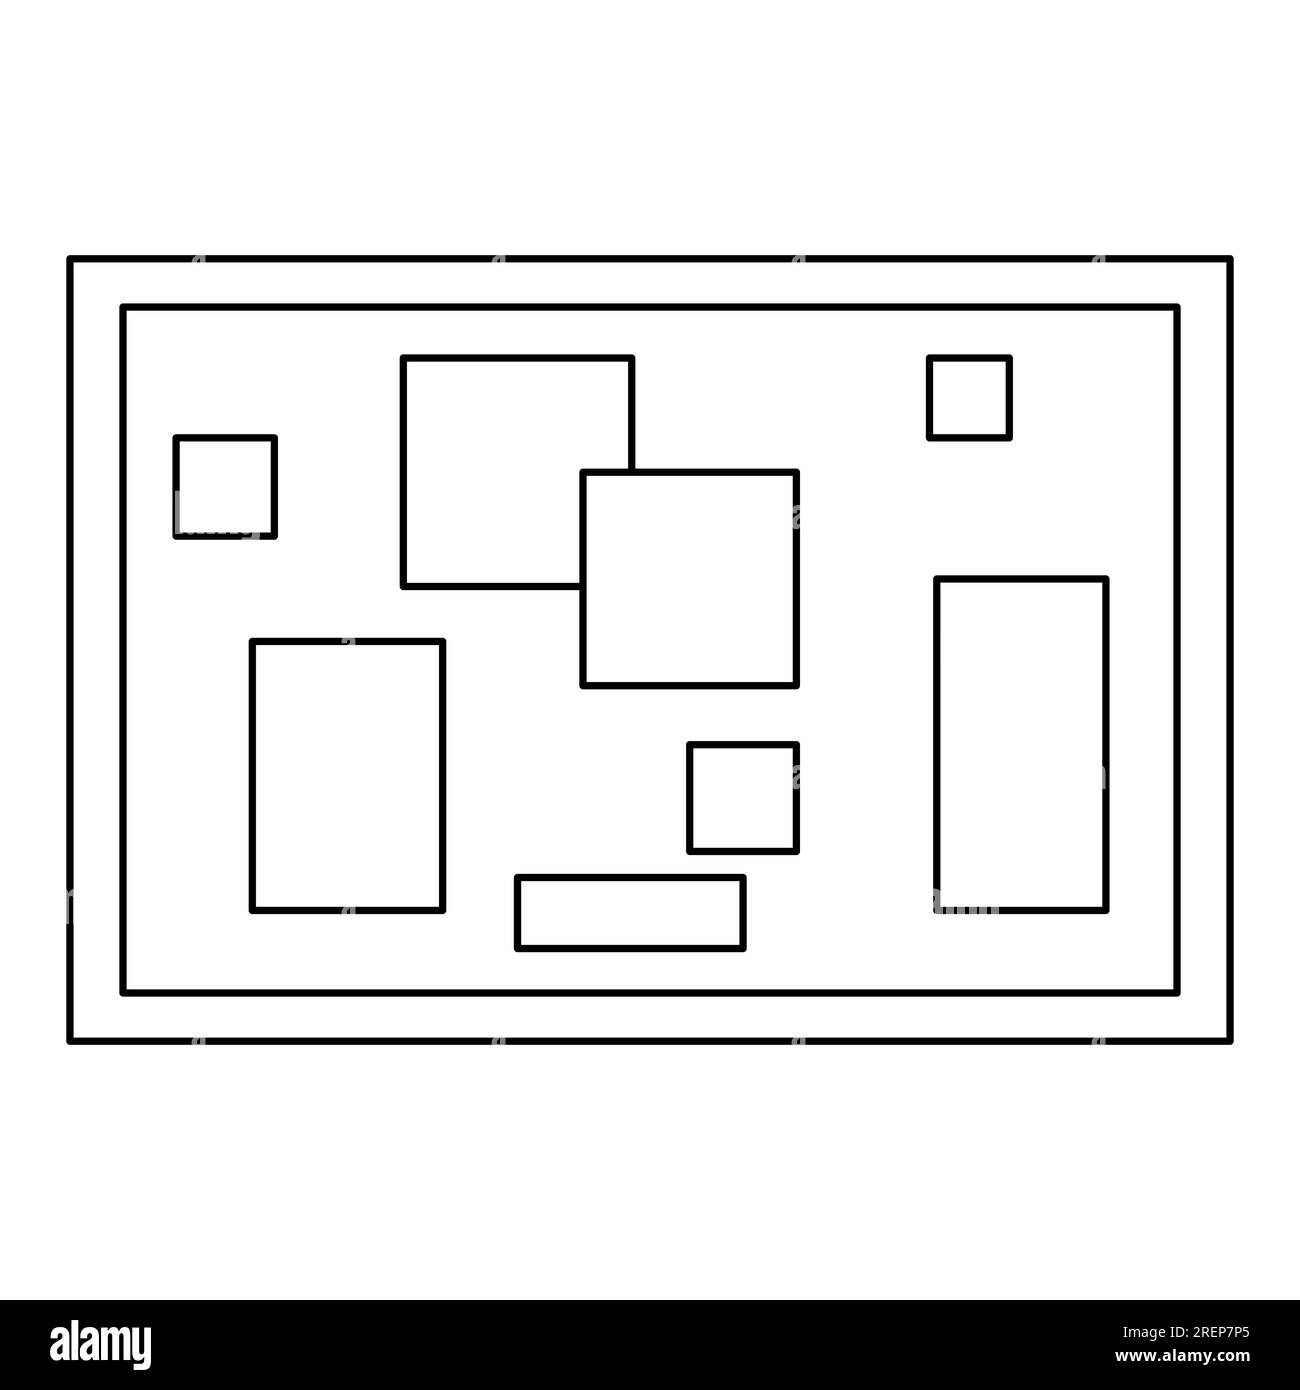 Peinture abstraite avec des formes géométriques, illustration vectorielle plate de style doodle pour livre de coloriage pour enfants Illustration de Vecteur